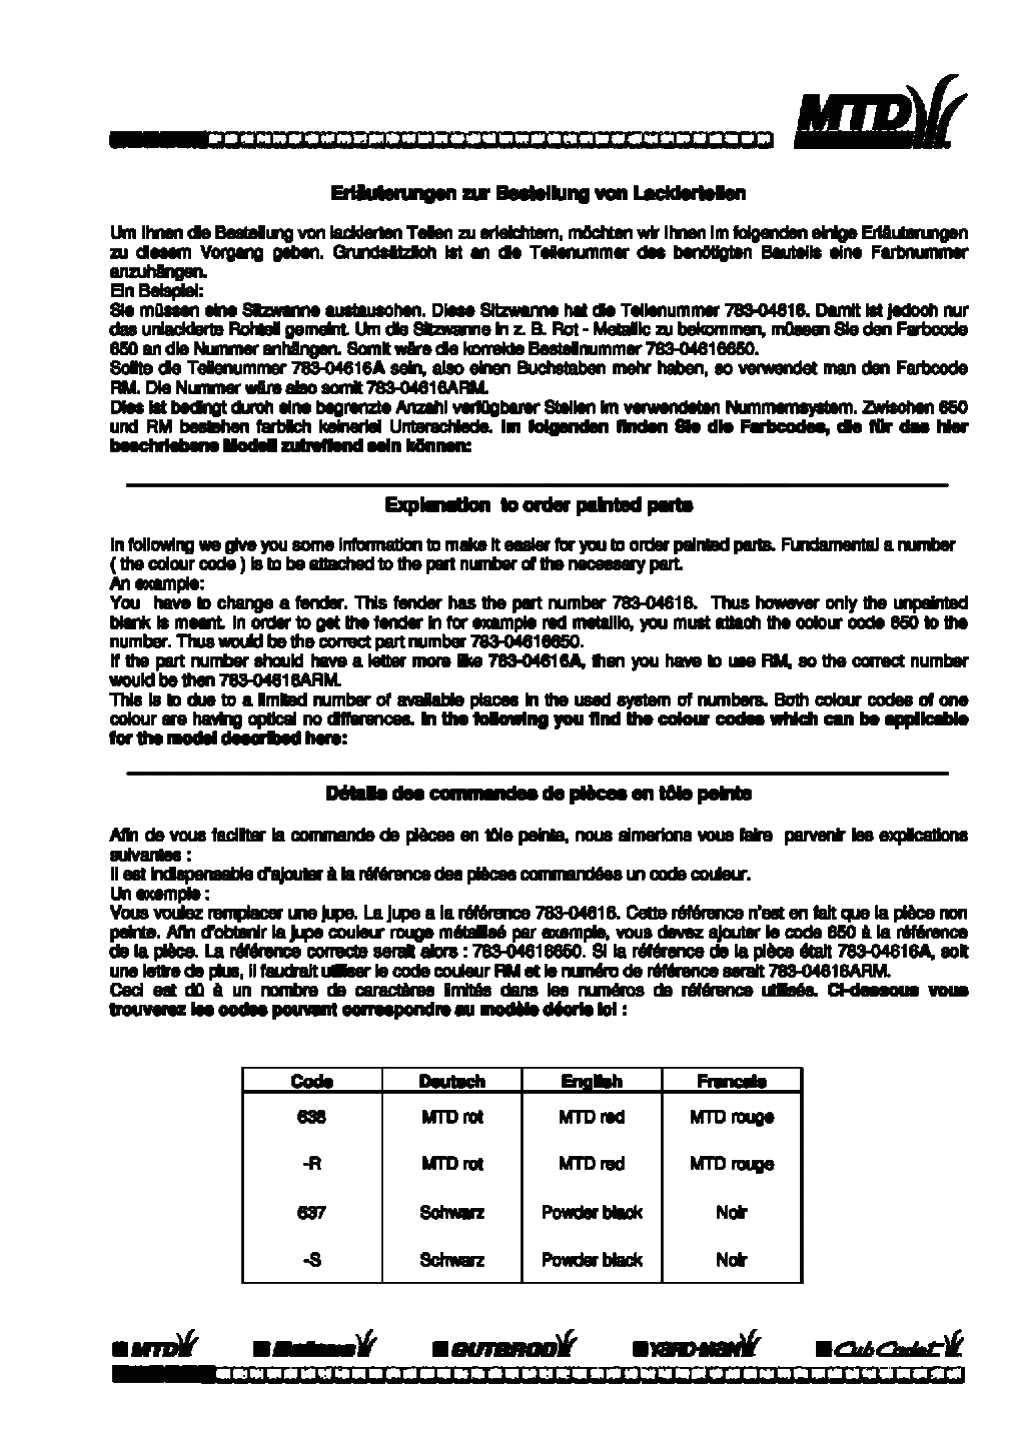 MTD Артикул 13AC451C600 (год выпуска 1998). Информация с цветовыми кодами